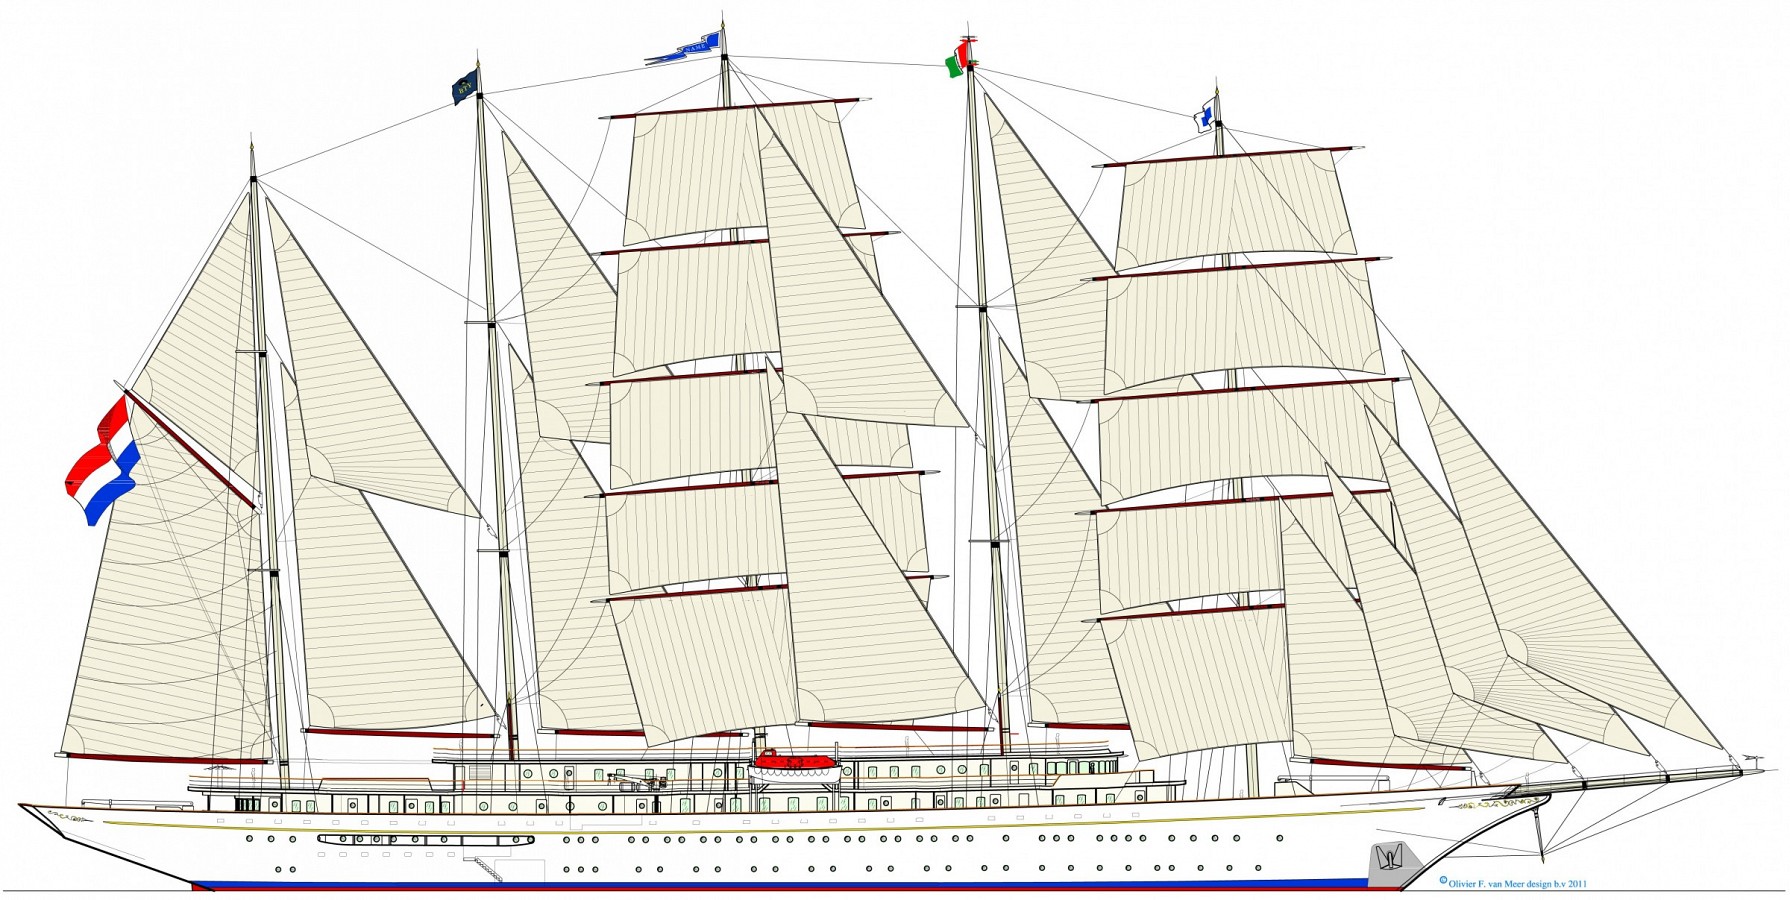 138m sail passenger vessel